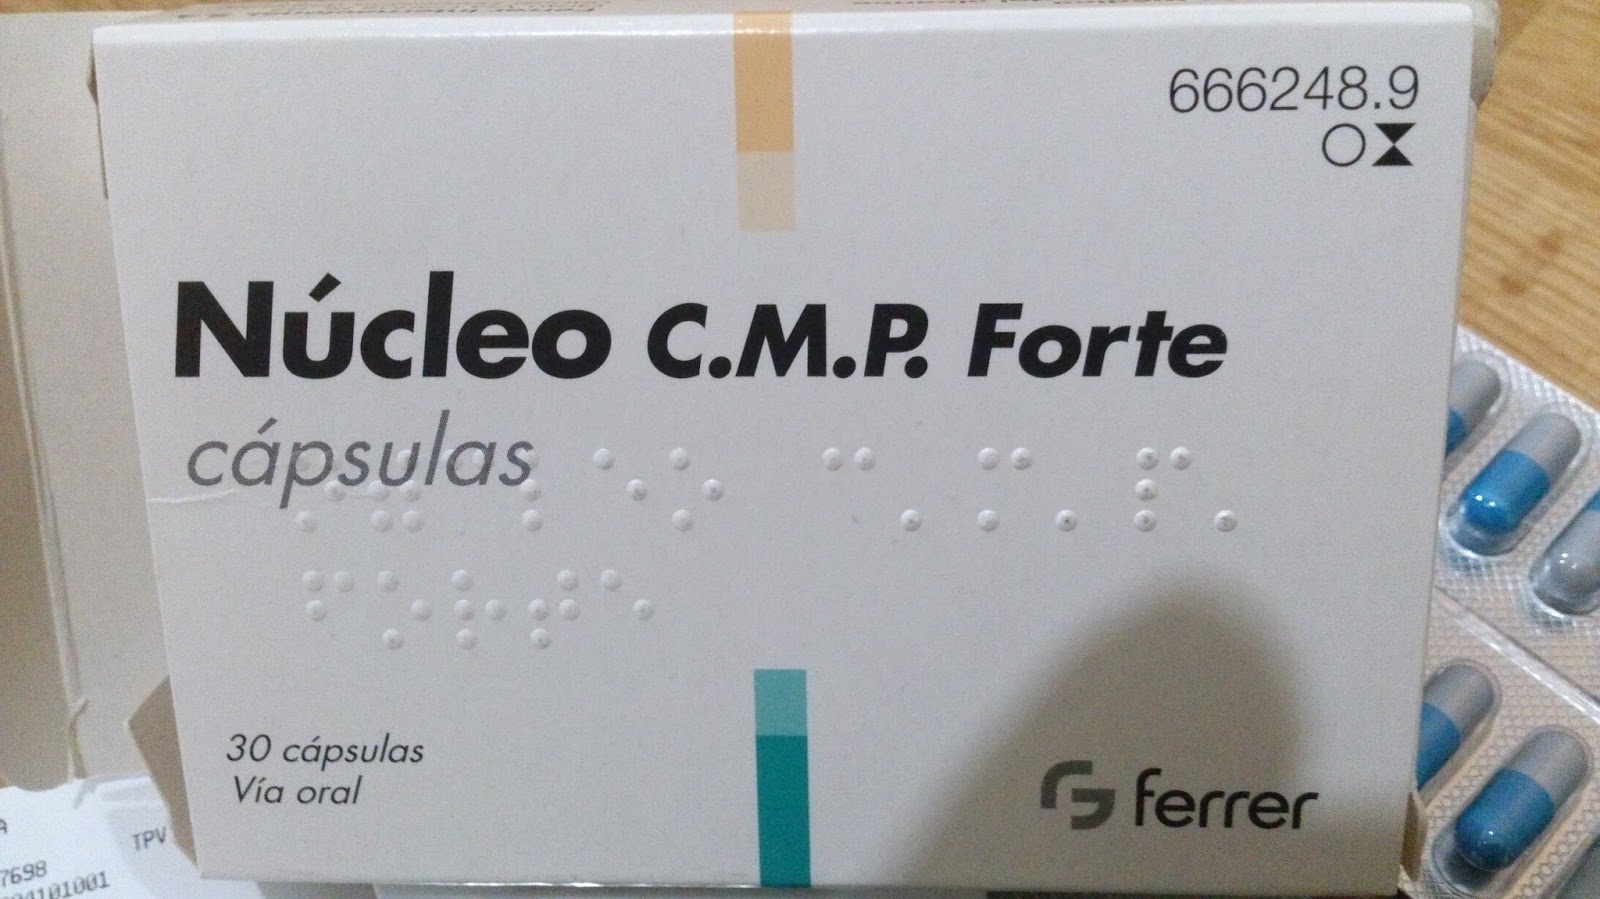 Нуклео цмф инструкция. Нуклео ЦМФ форте капс n30. Нуклео ЦМФ форте ампулы Испания. Нуклео ц.м.ф. форте ( nucleo c.m.p. Forte) Испания. Nucleo CMP Forte ампулы.